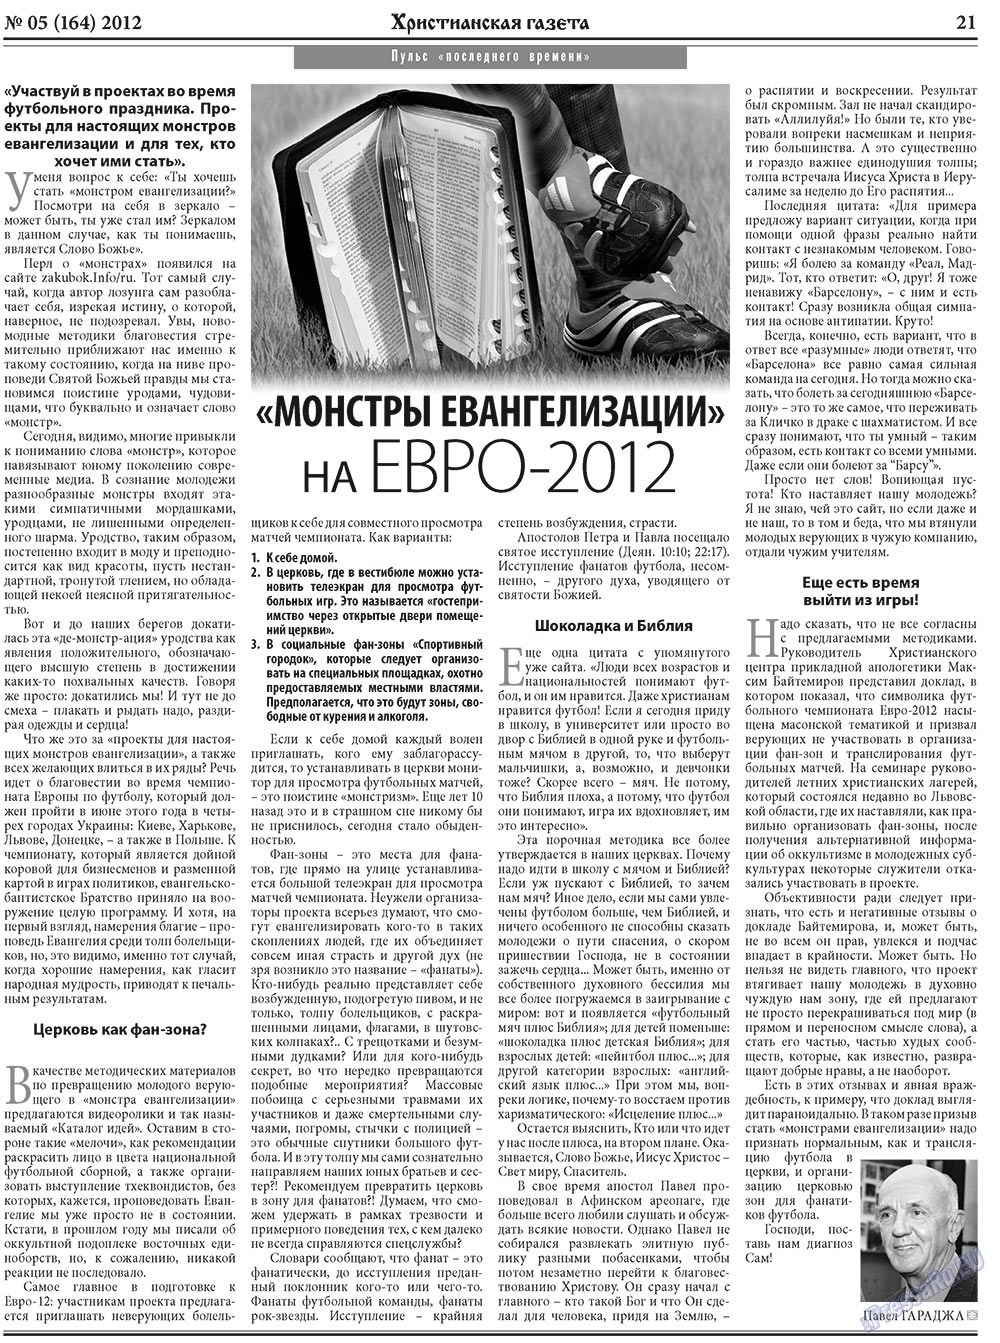 Христианская газета, газета. 2012 №5 стр.29